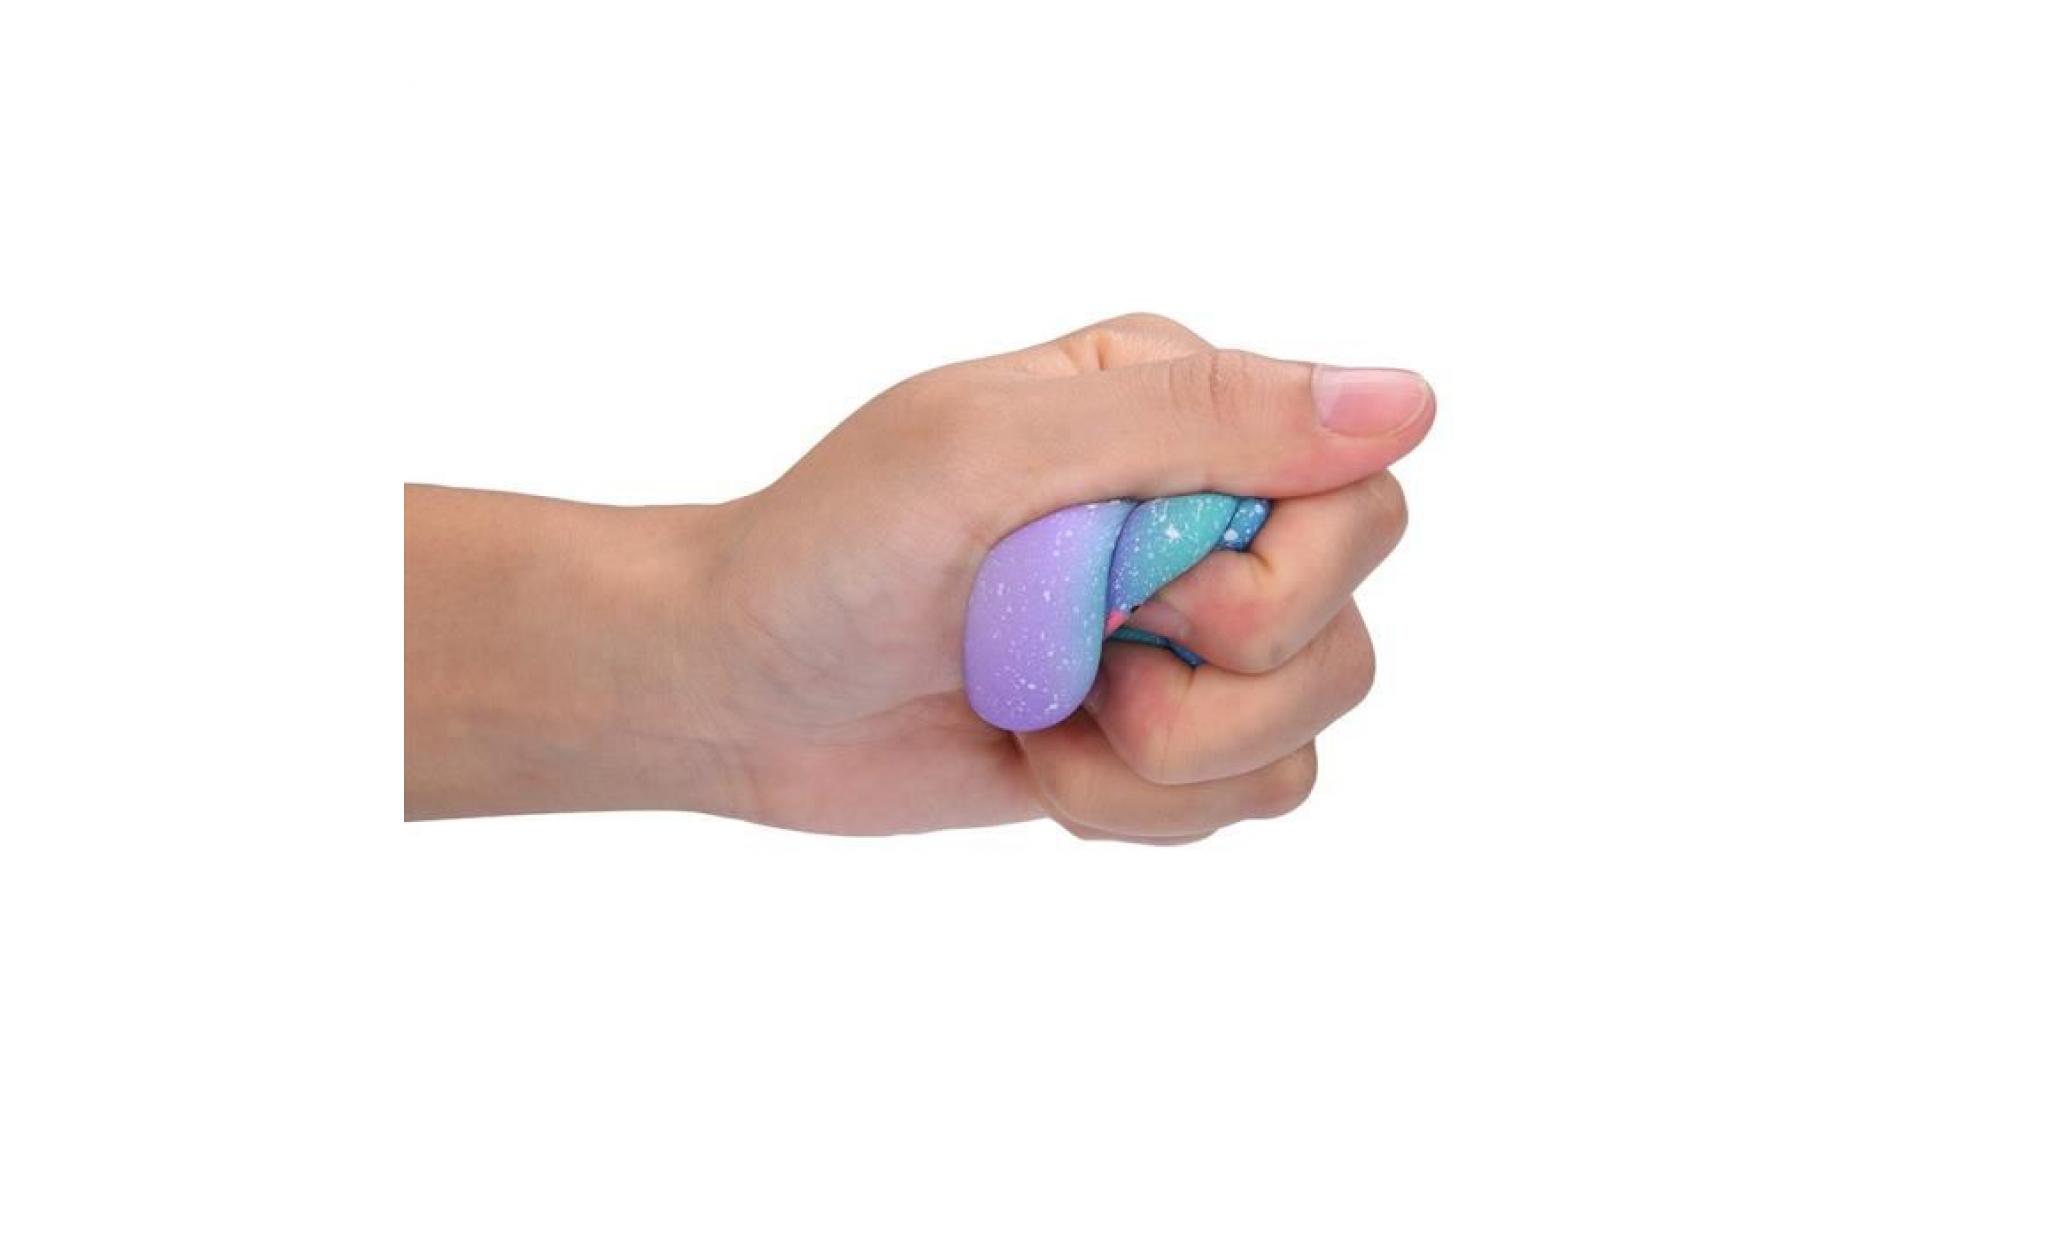 mosakog® galaxy poo odeur agréable squishies jouets squeeze lente hausse du stress toys releveur multicolore_5657